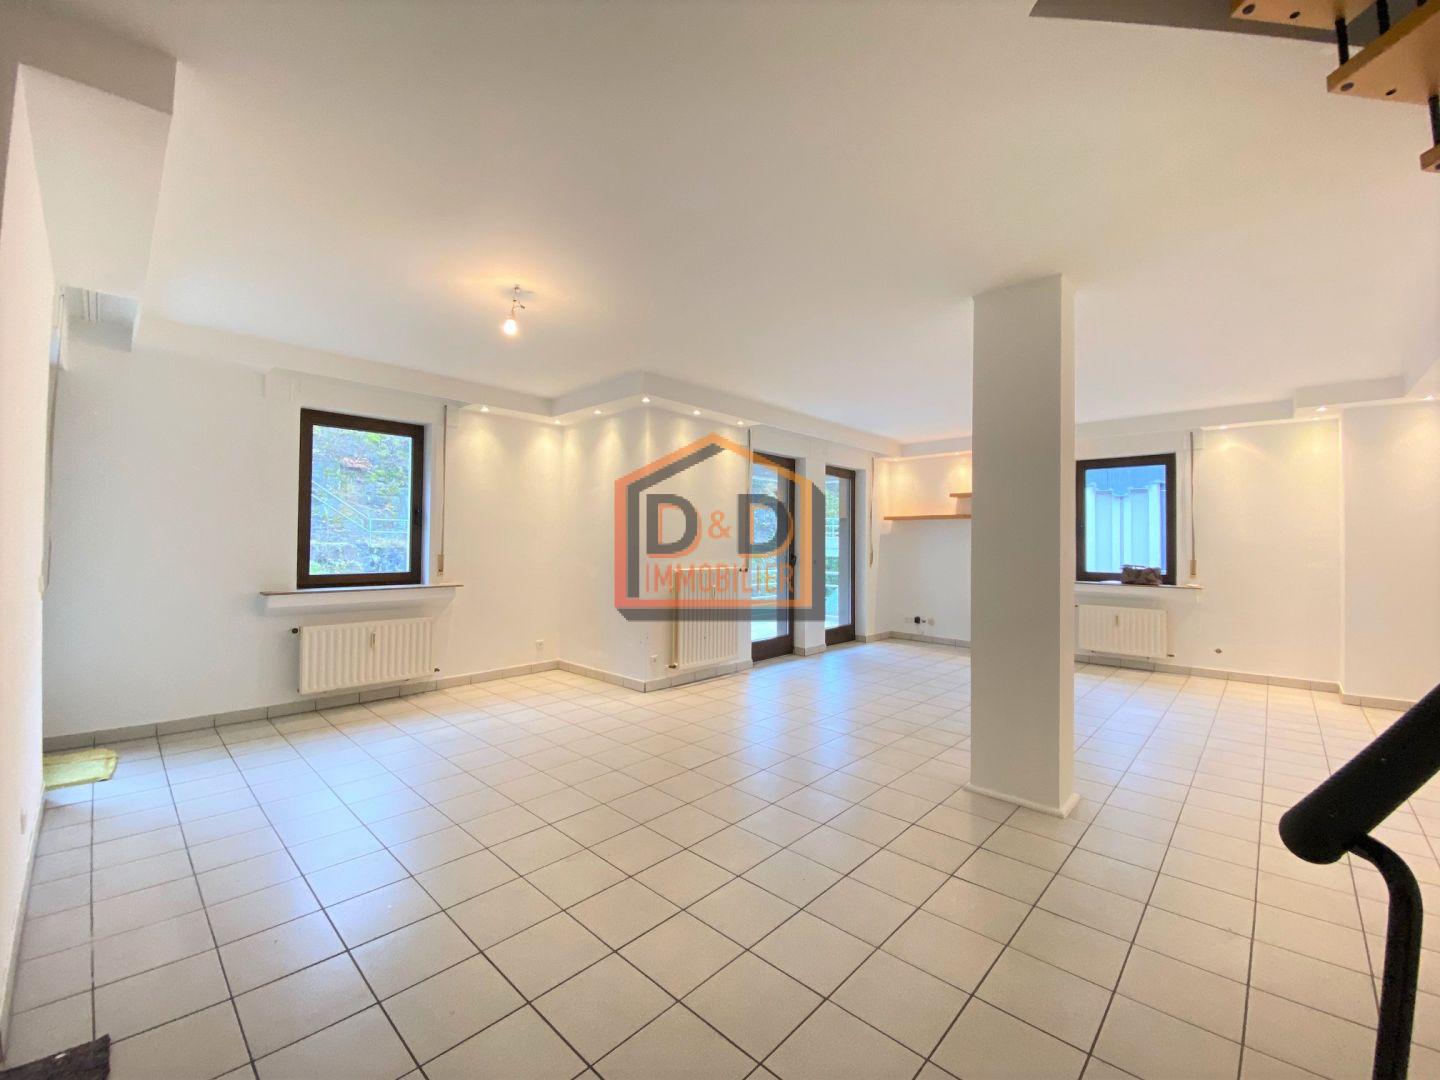 Appartement à Howald, 120 m², 2 chambres, 2 salles de bain, 1 900 €/mois